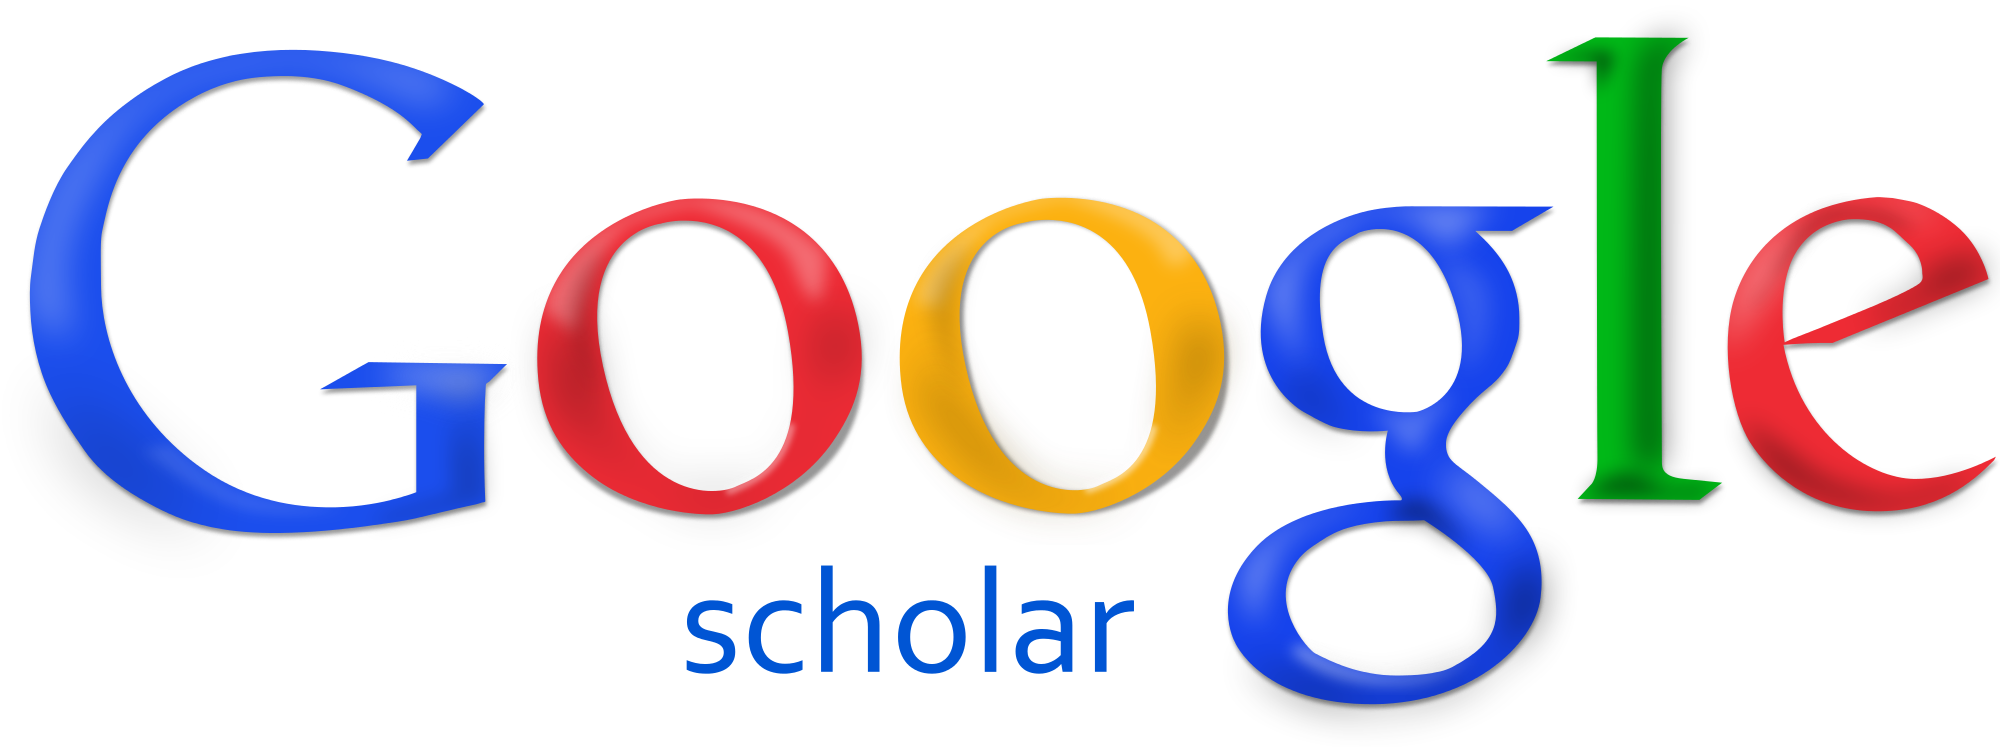 Google Scholars.png